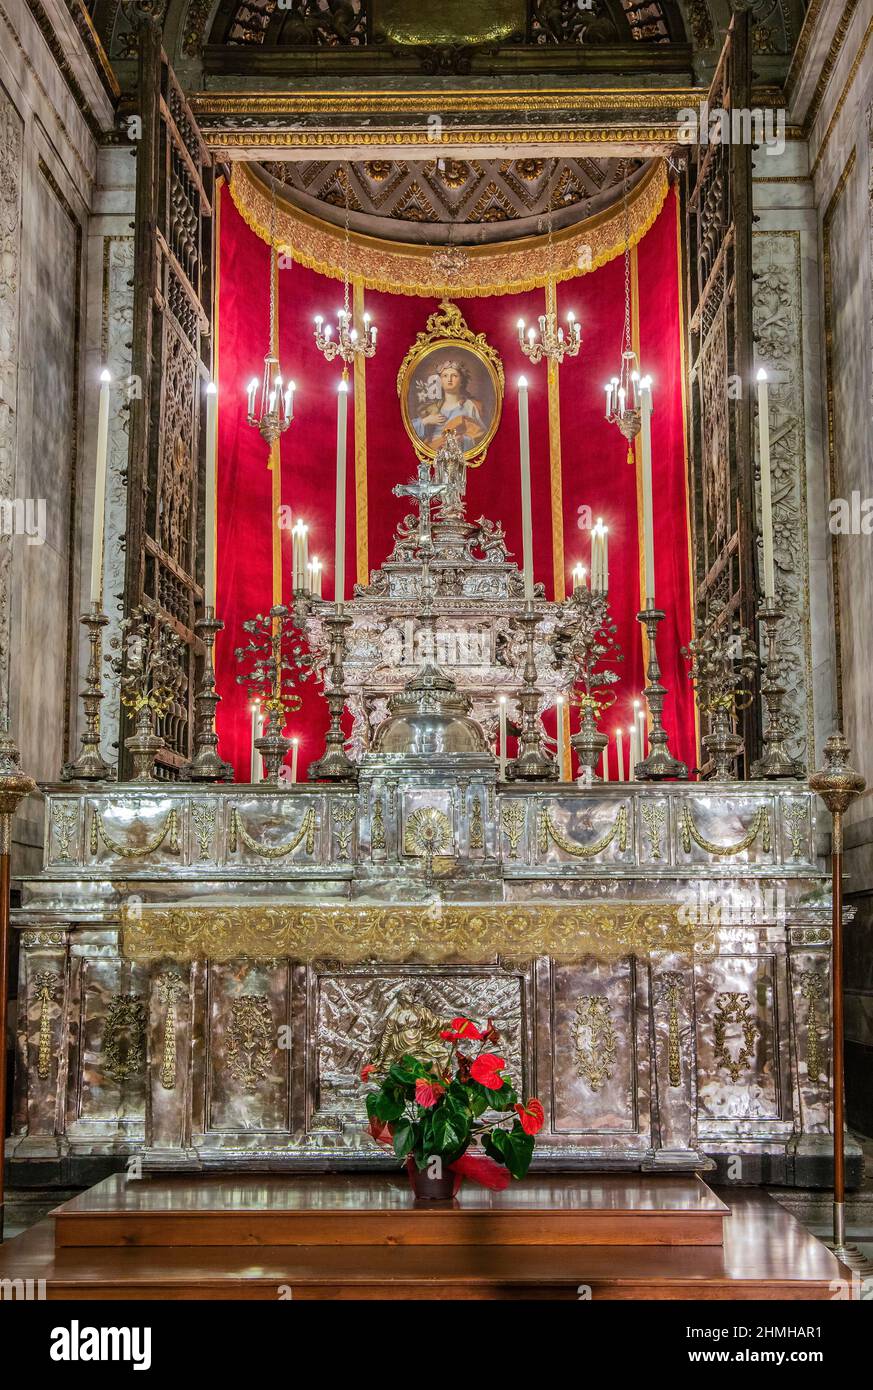 Altar de plata de San Rosalia en el pasillo de la catedral, Palermo, Sicilia, Italia Foto de stock